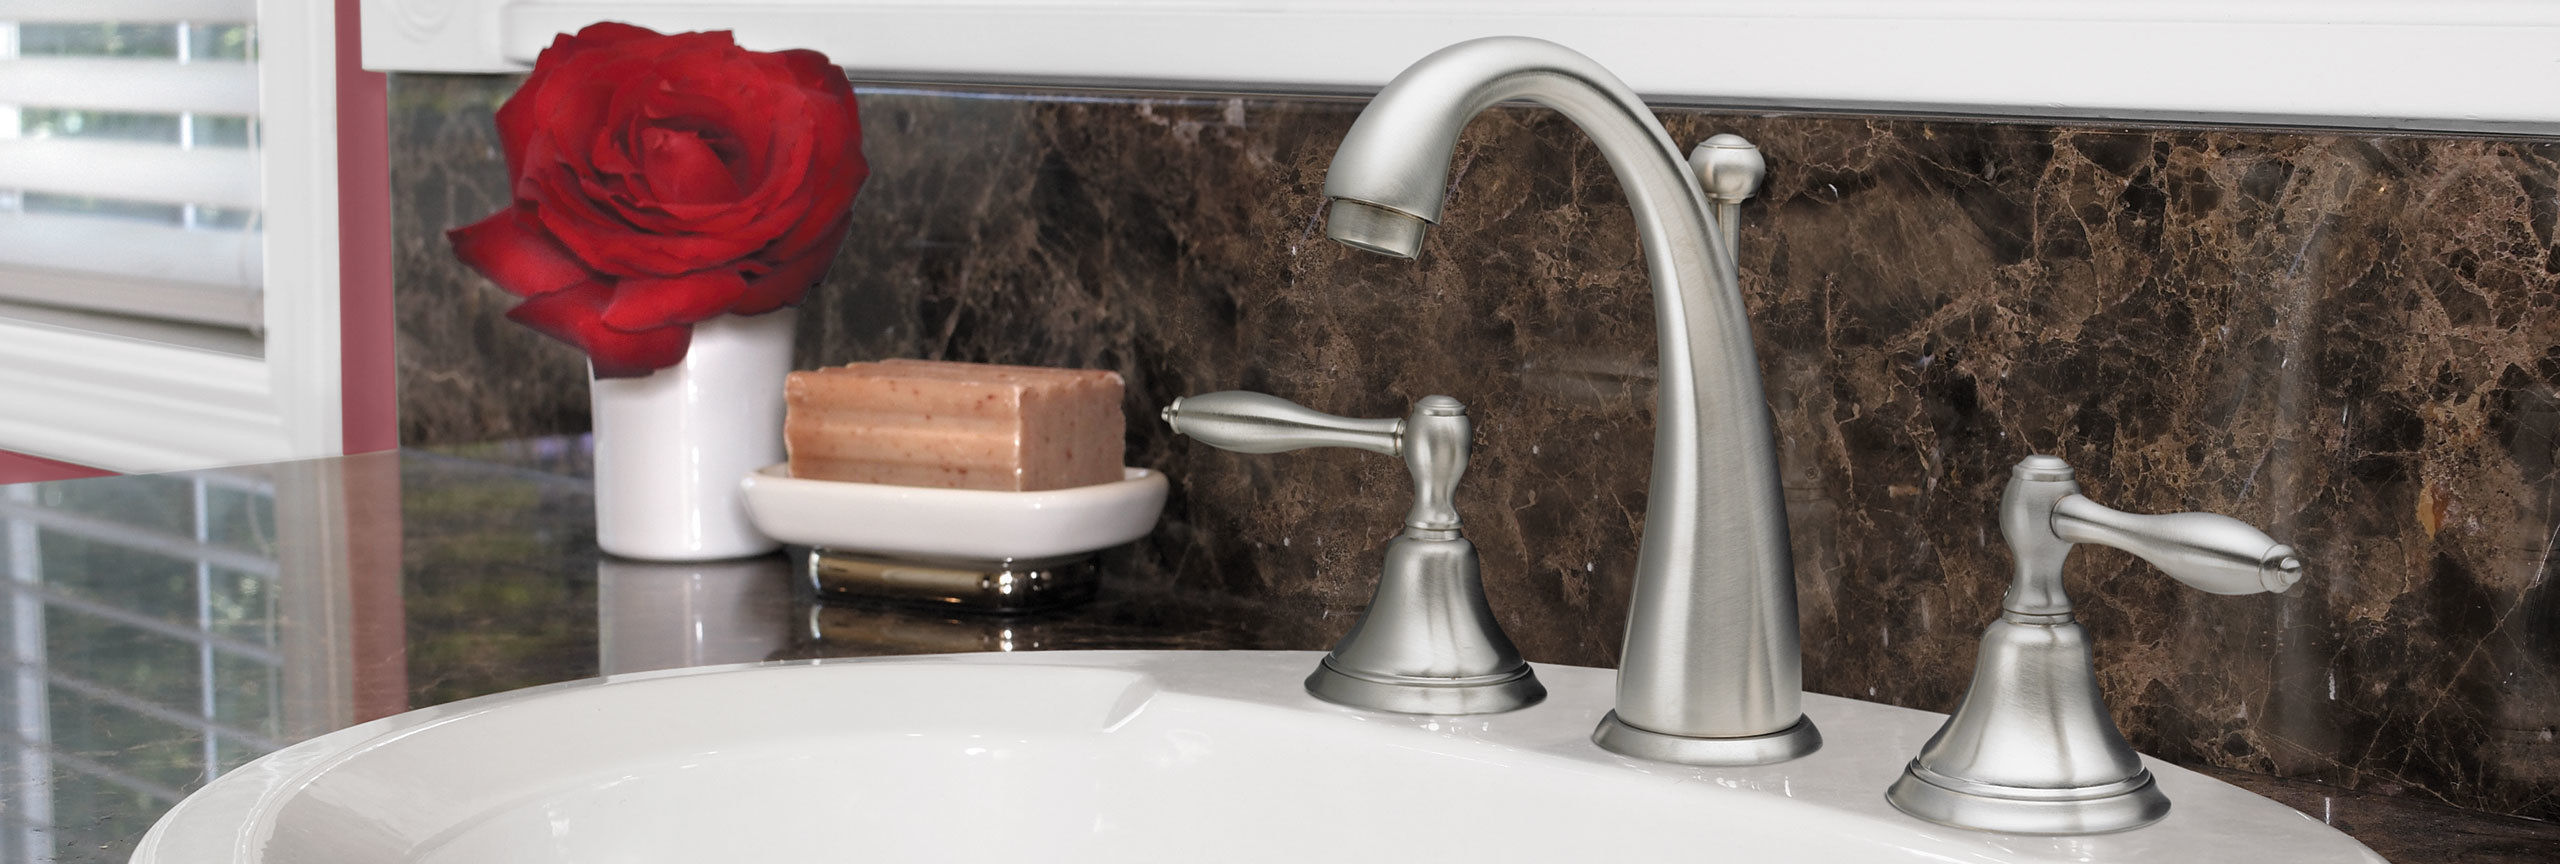 bathroom series Mendocino widespread faucet on sink